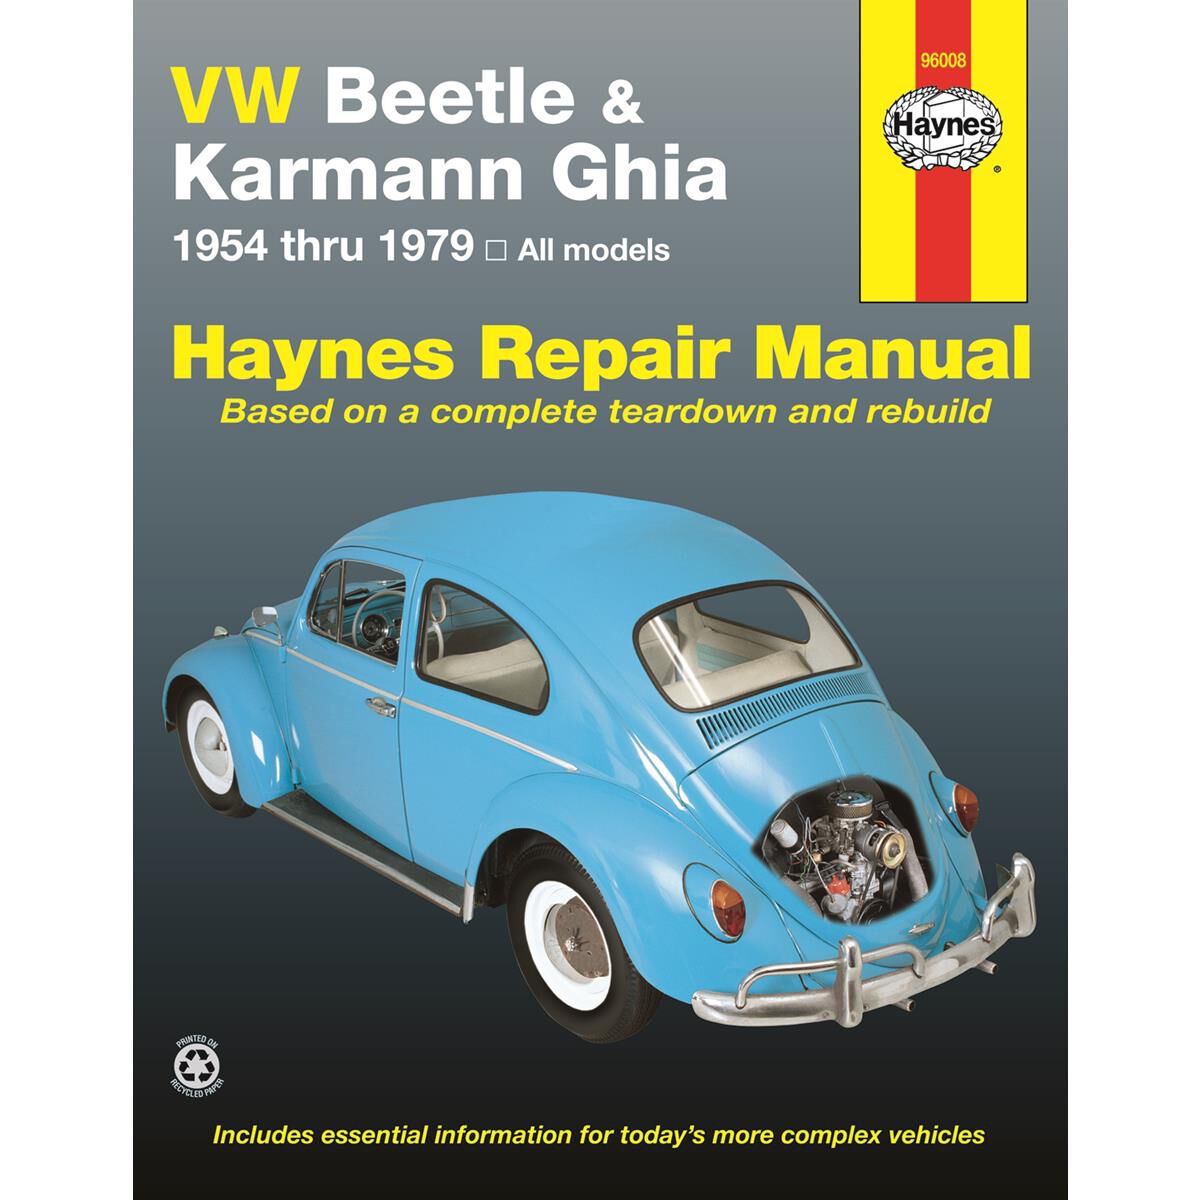 1973 vw beetle repair manual pdf free